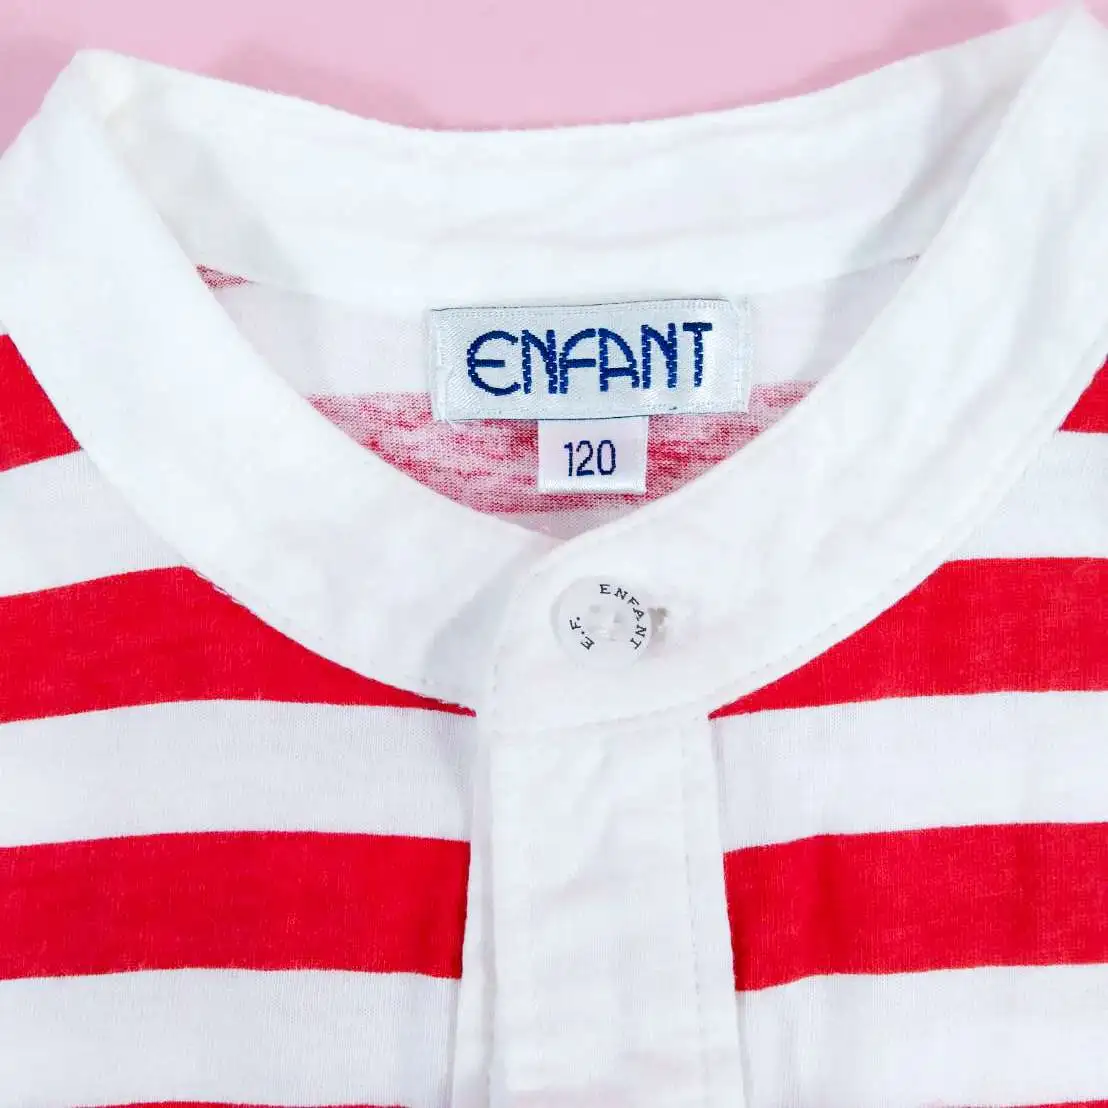 ENFANT เสื้อยืดแขนสั้นลายขวางสีแดง,ขาวไซส์ 120